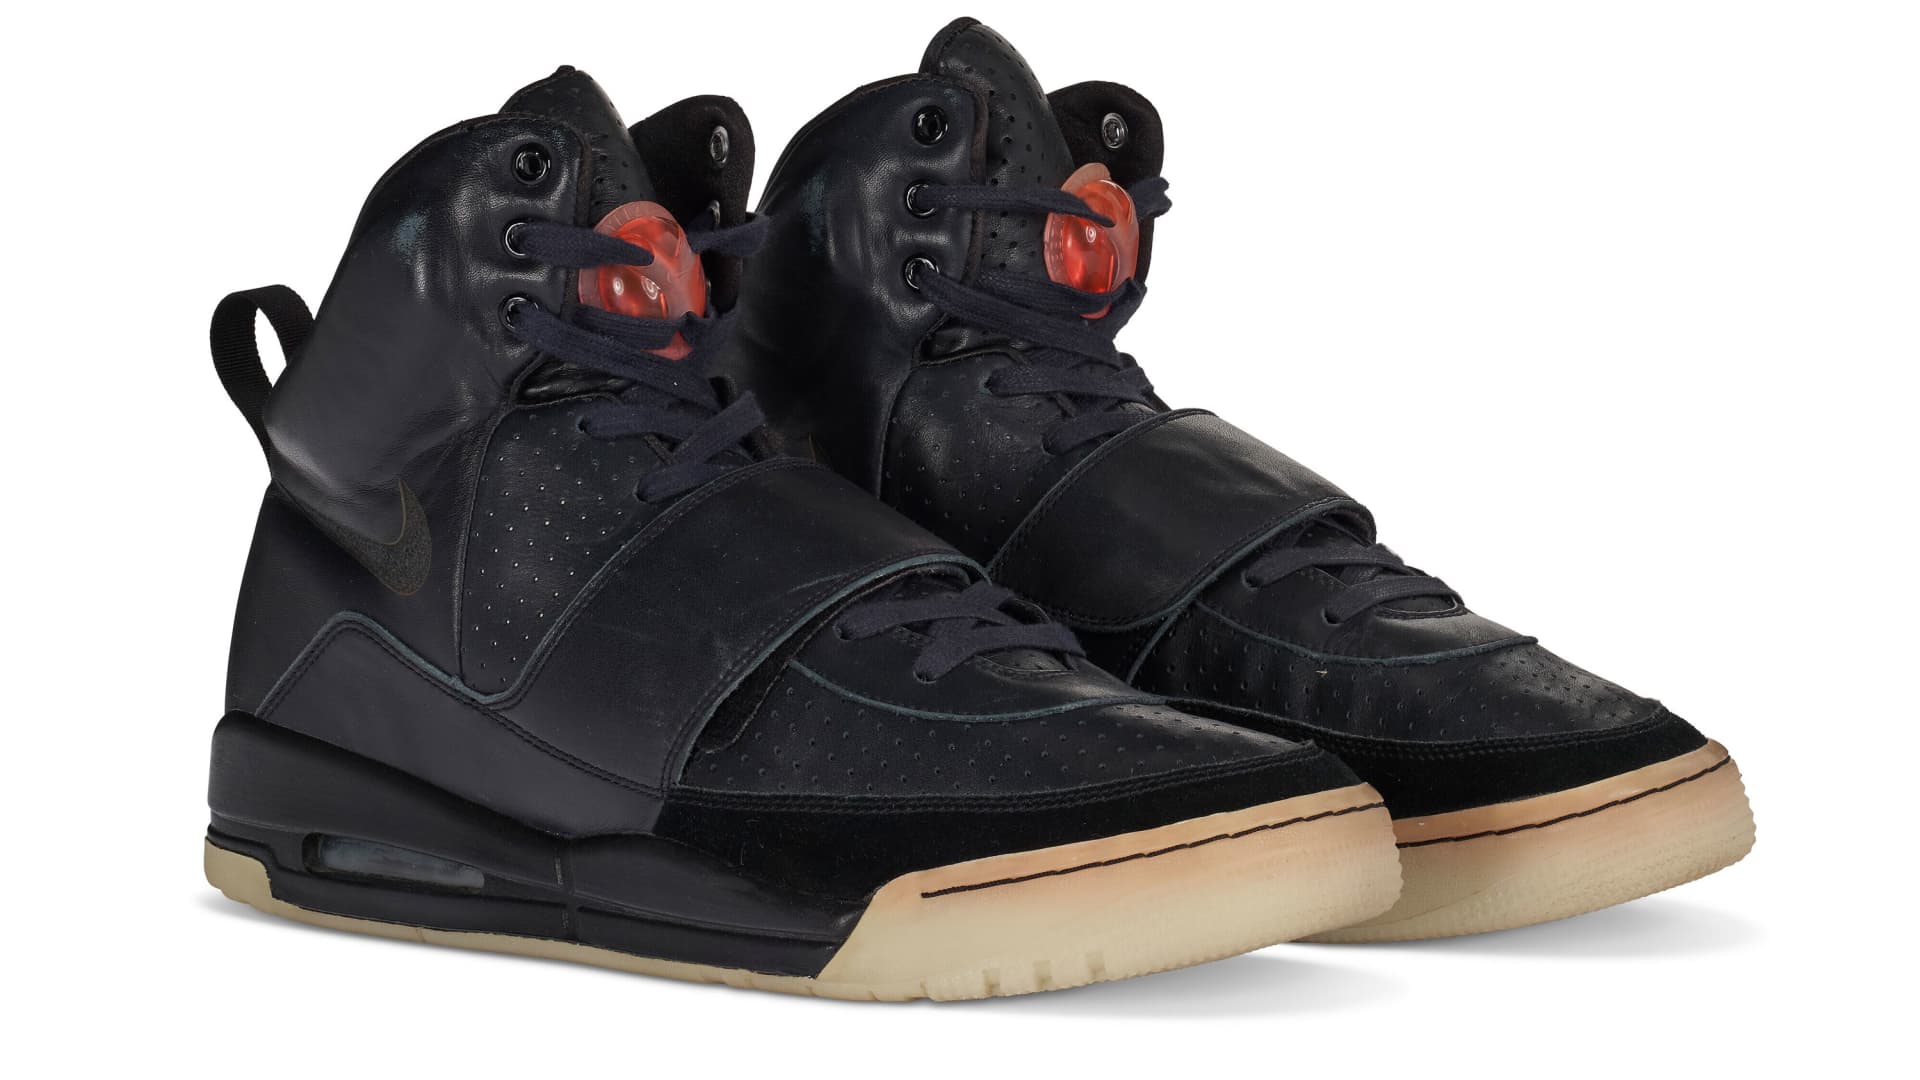 Kanye West Grammy Worn, Nike Air Yeezy 1 Sneaker Prototype